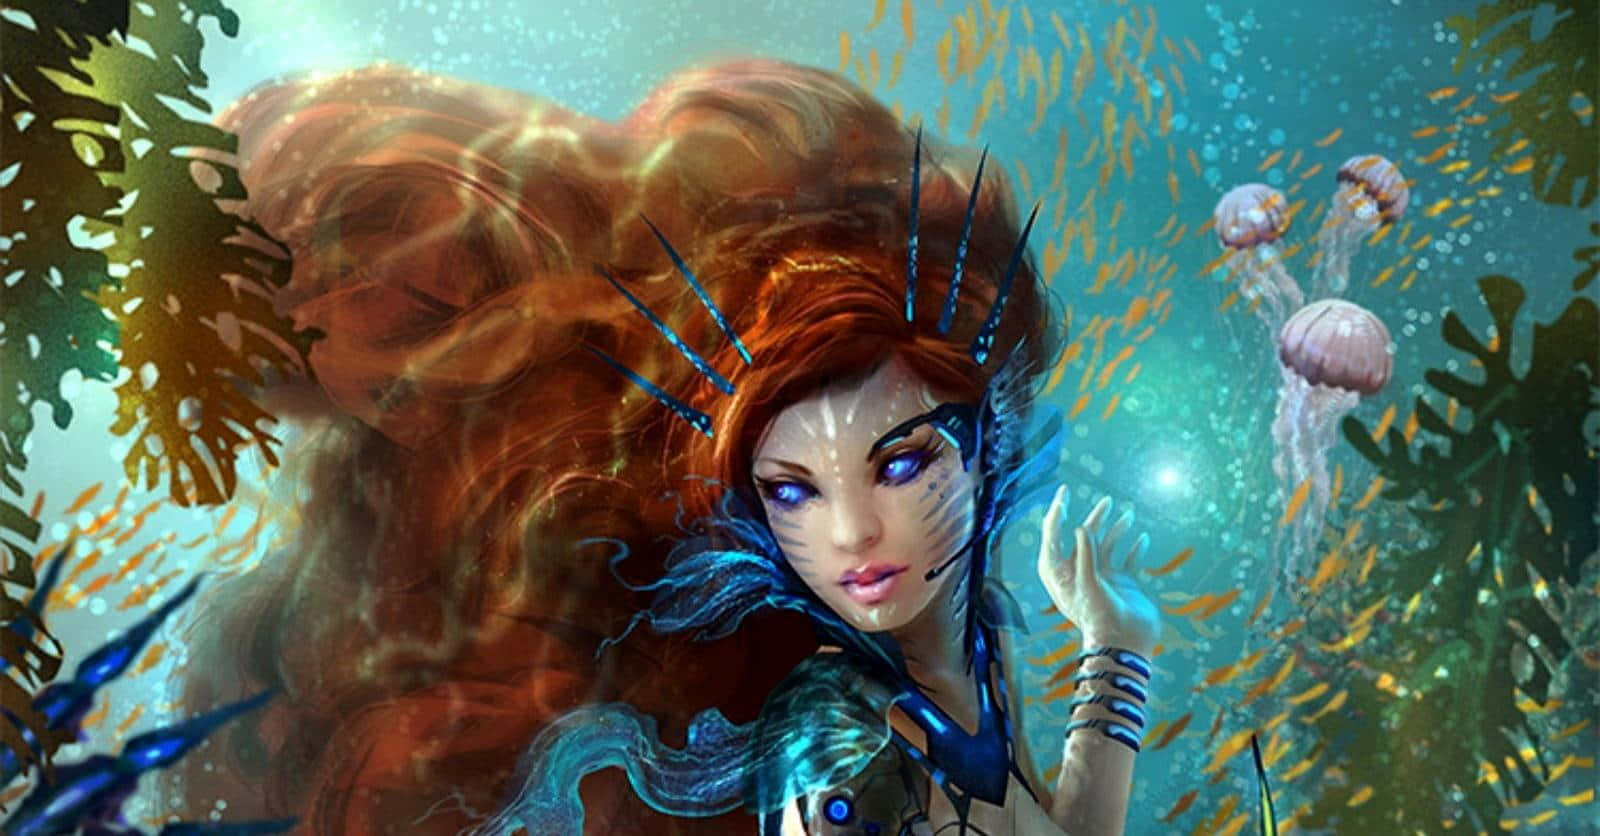 Ilustraciónen Color De Una Sirena Pelirroja De Fantasía